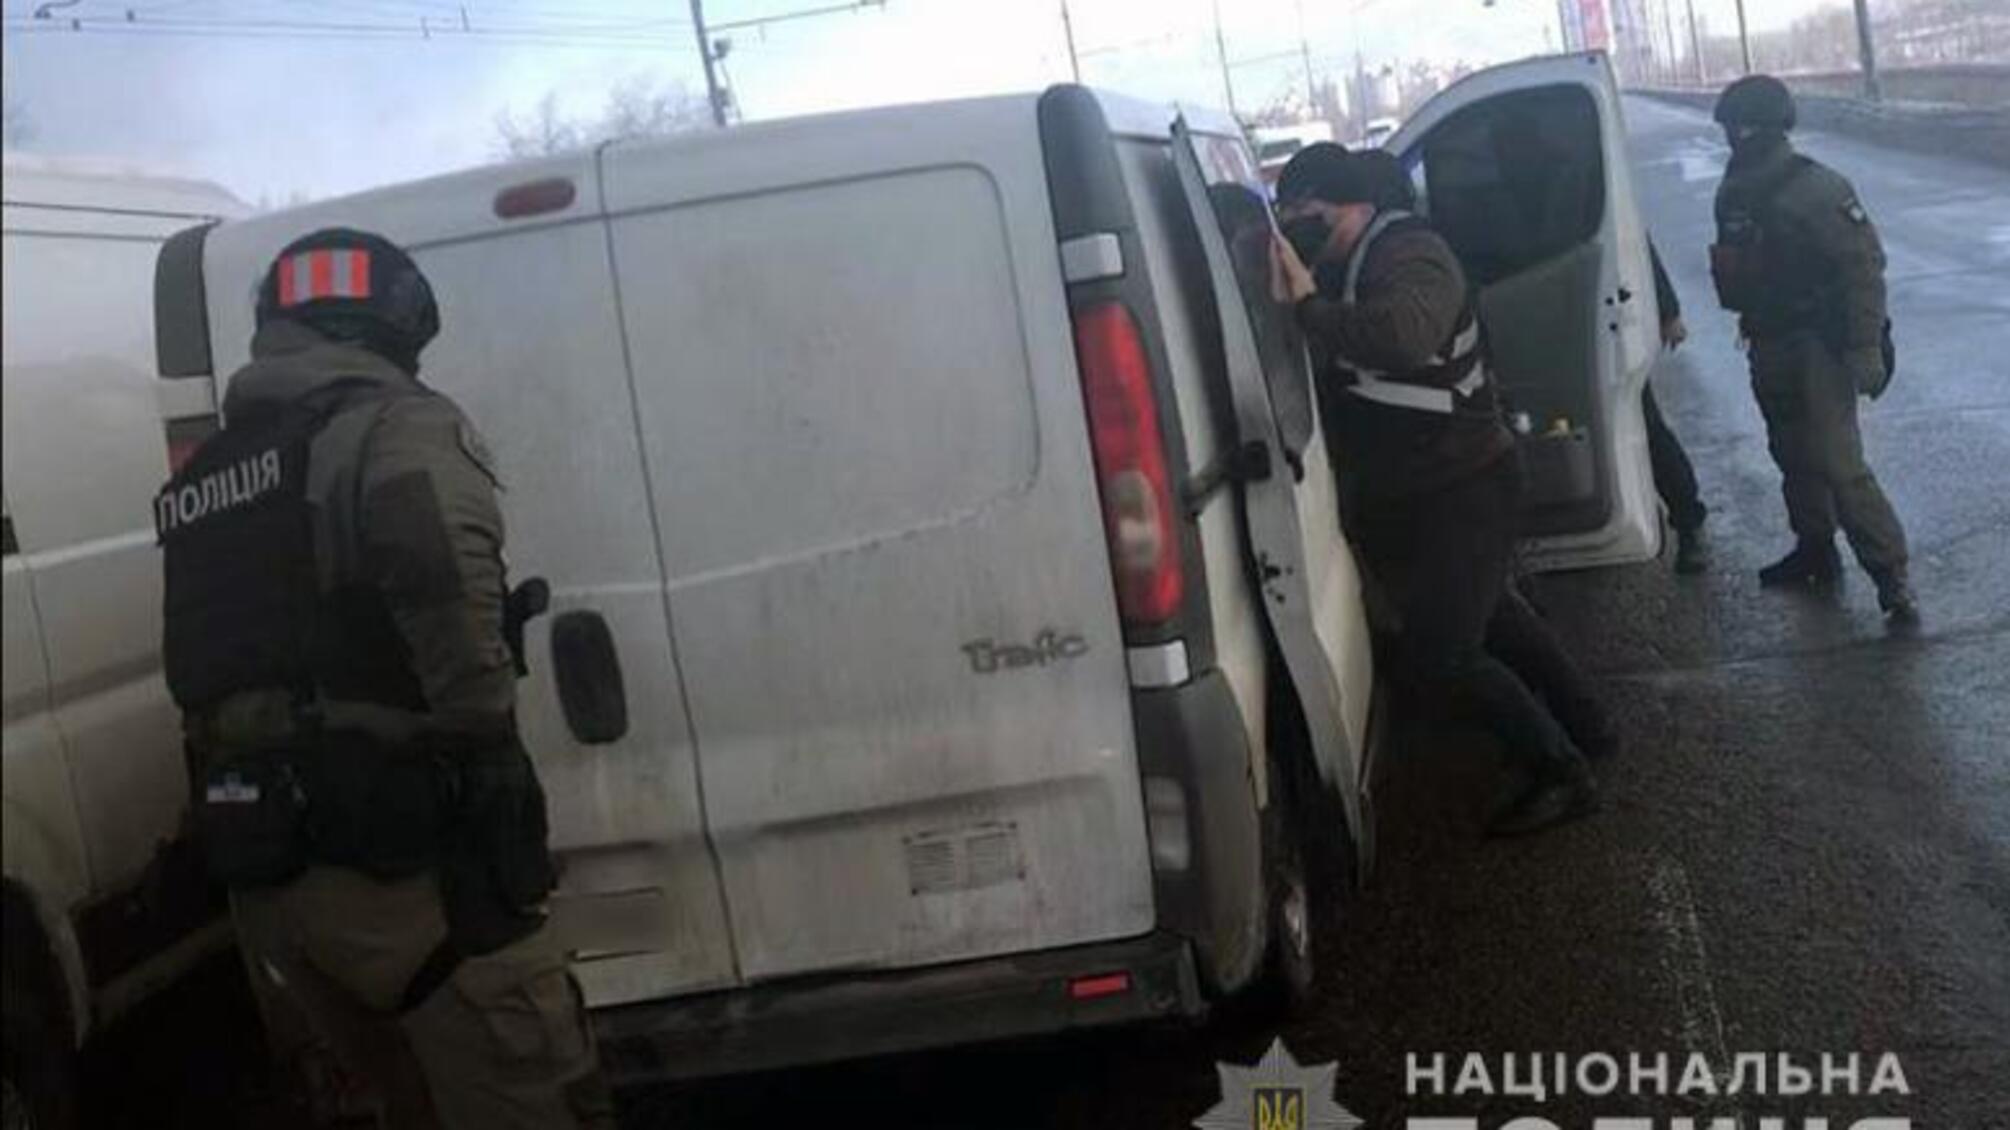 Поліцейські Києва проводять спецоперацію для затримання етнічного угруповання наркоторговців